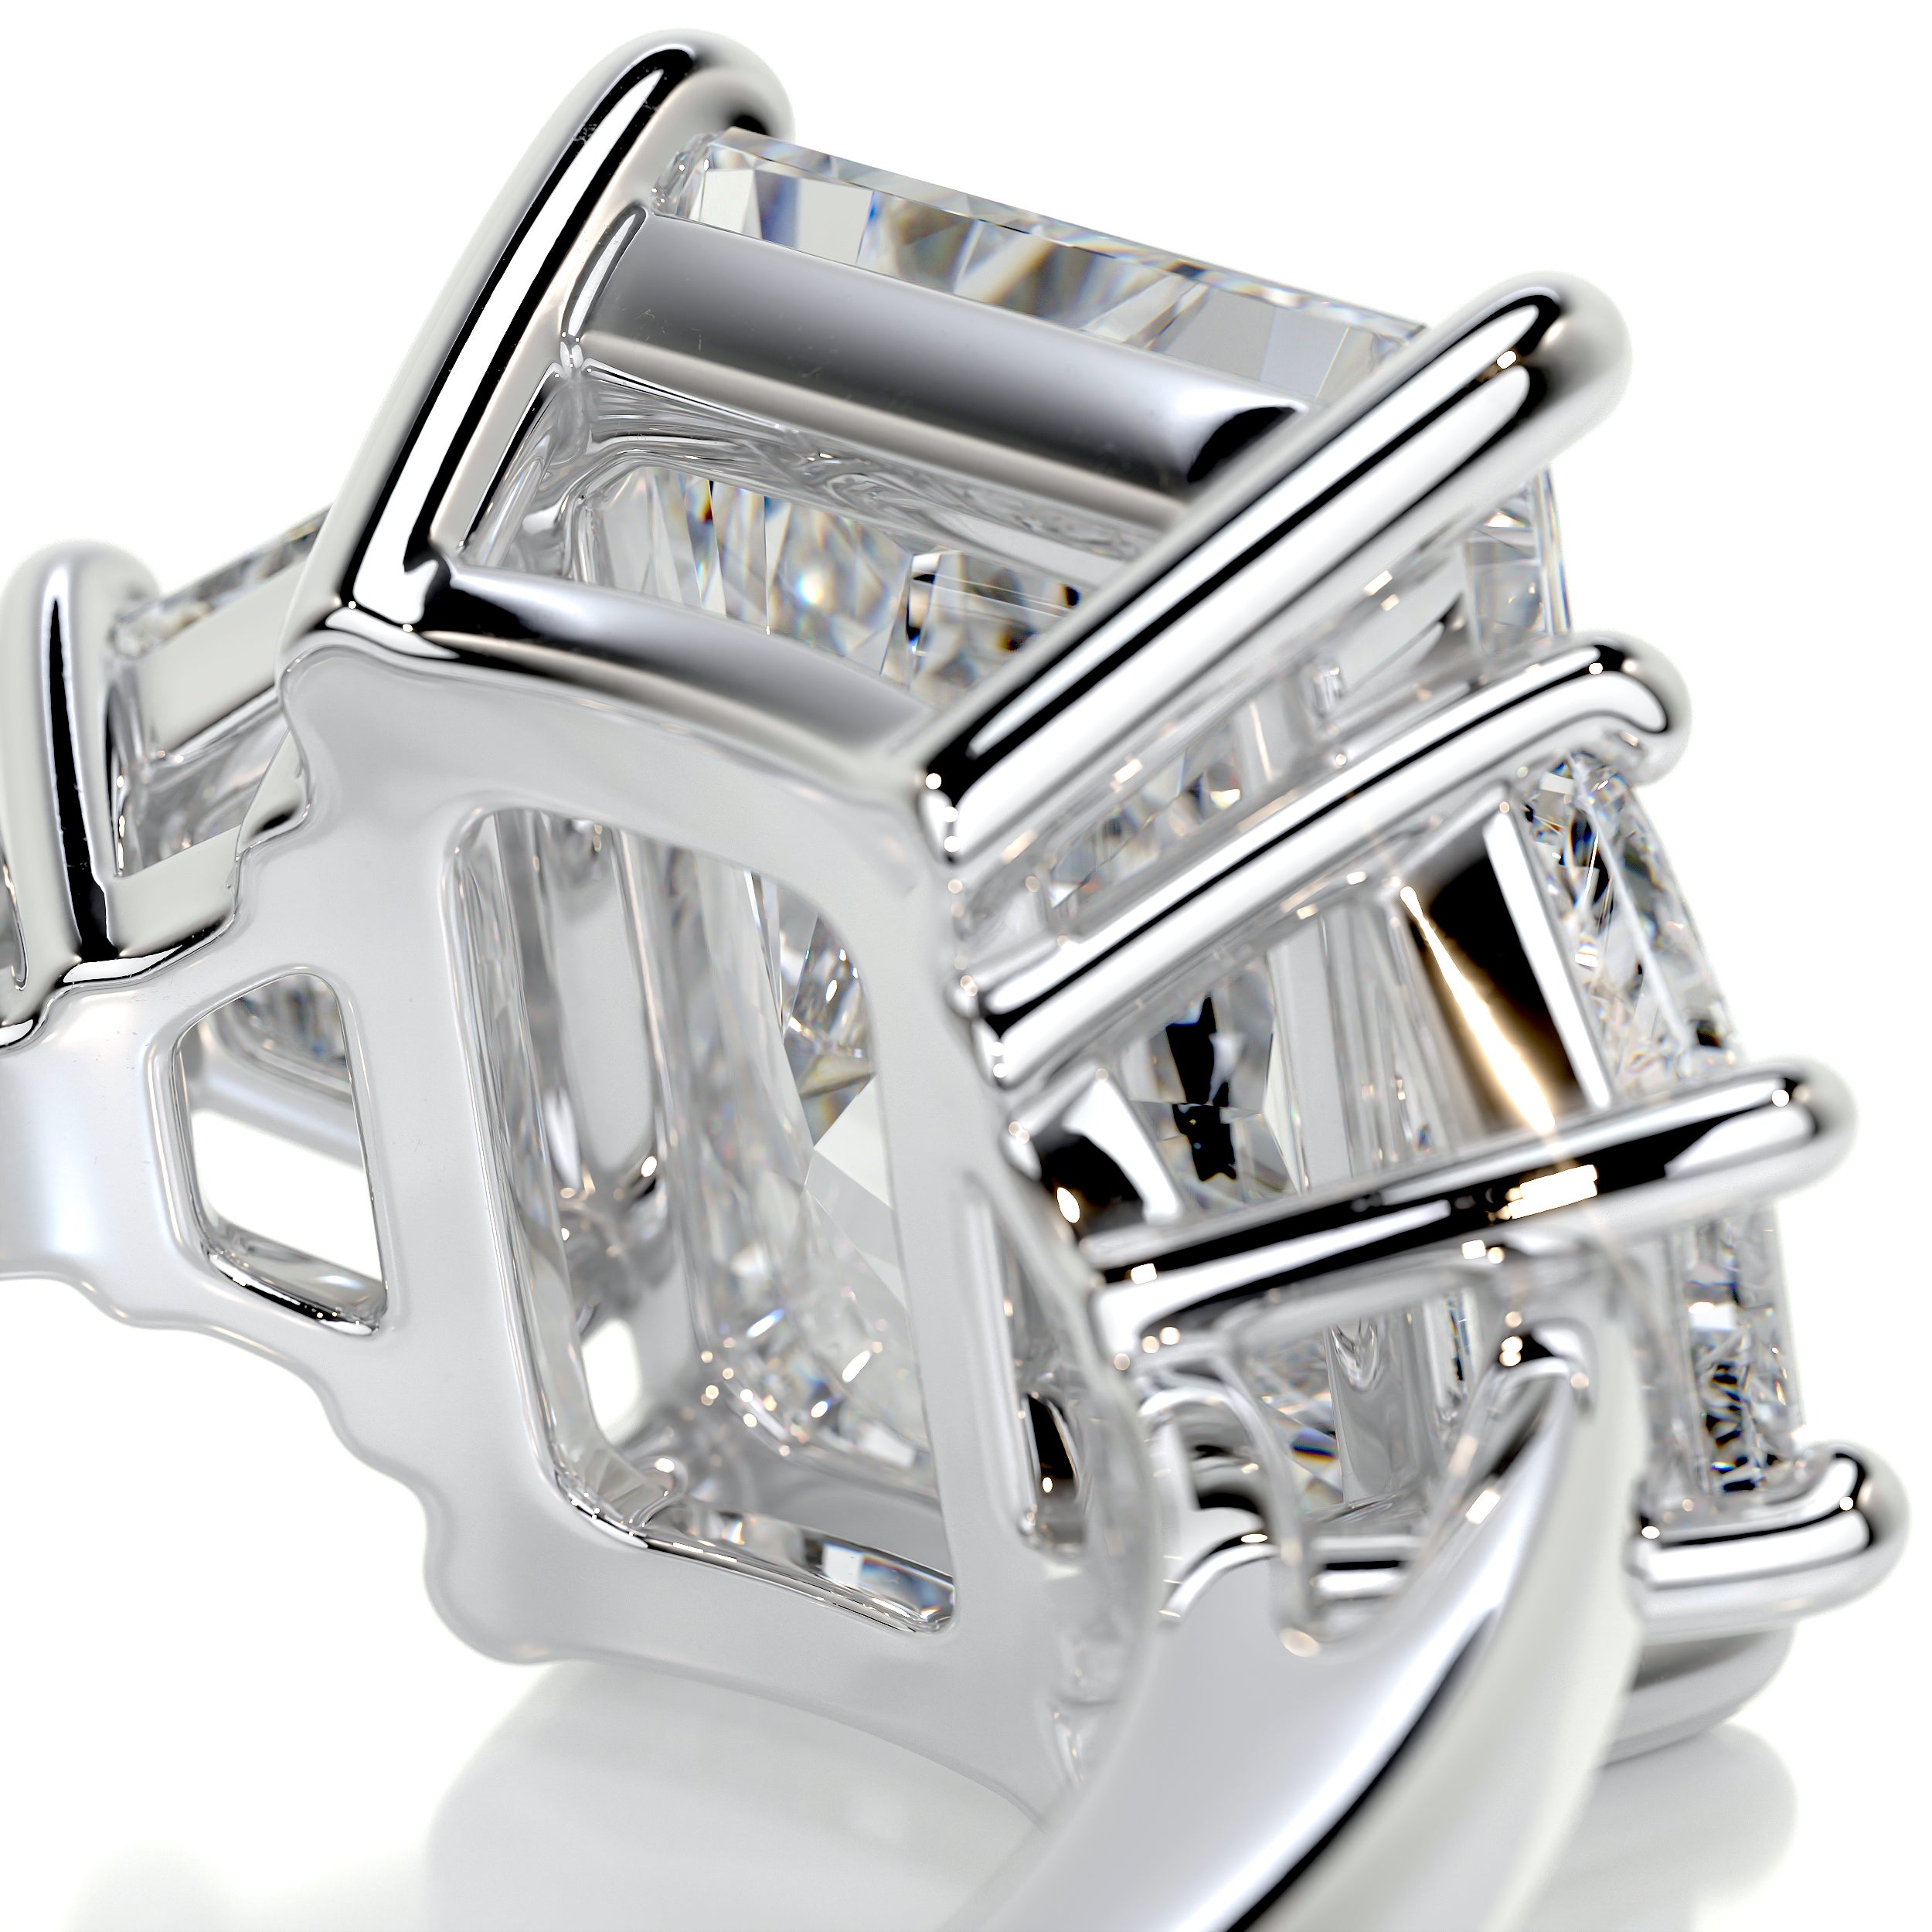 Skylar Diamond Engagement Ring -18K White Gold